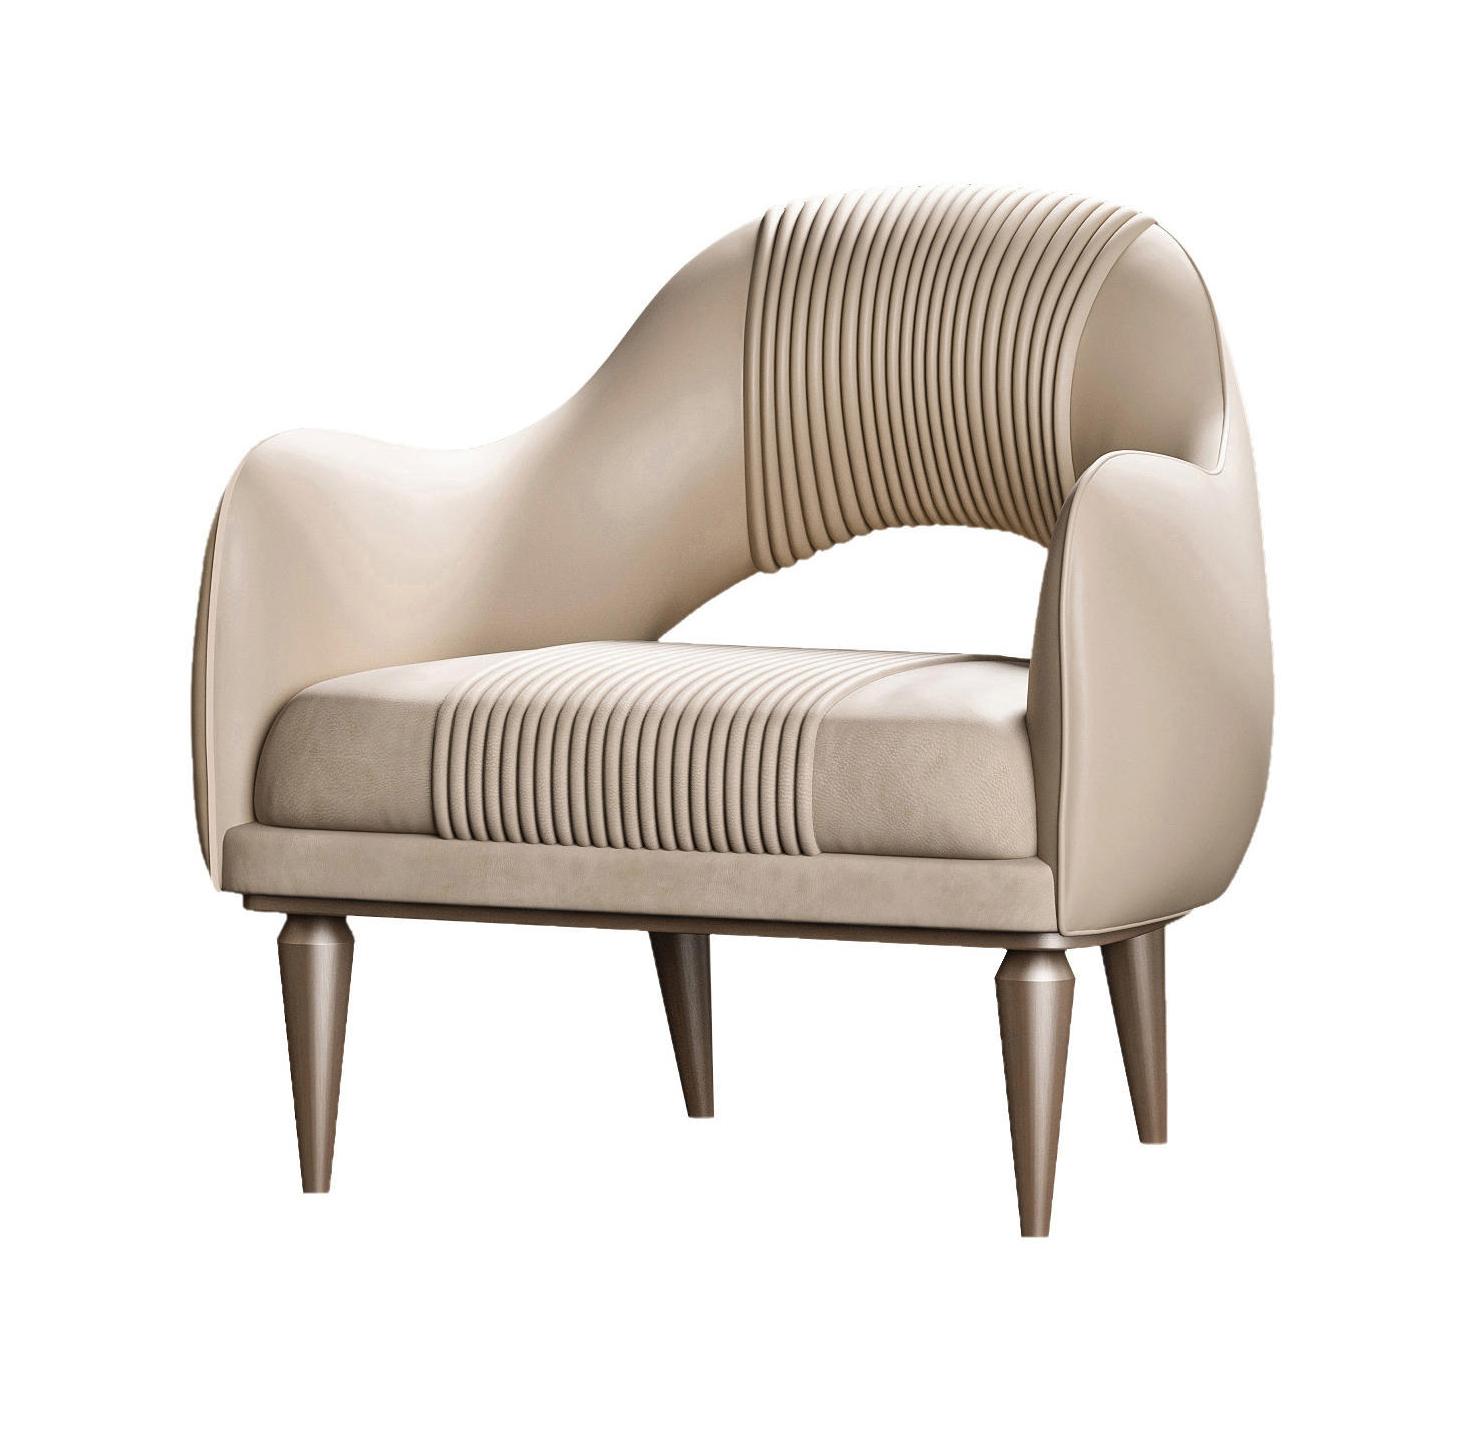 Exquisite Cream Luxury Armchair